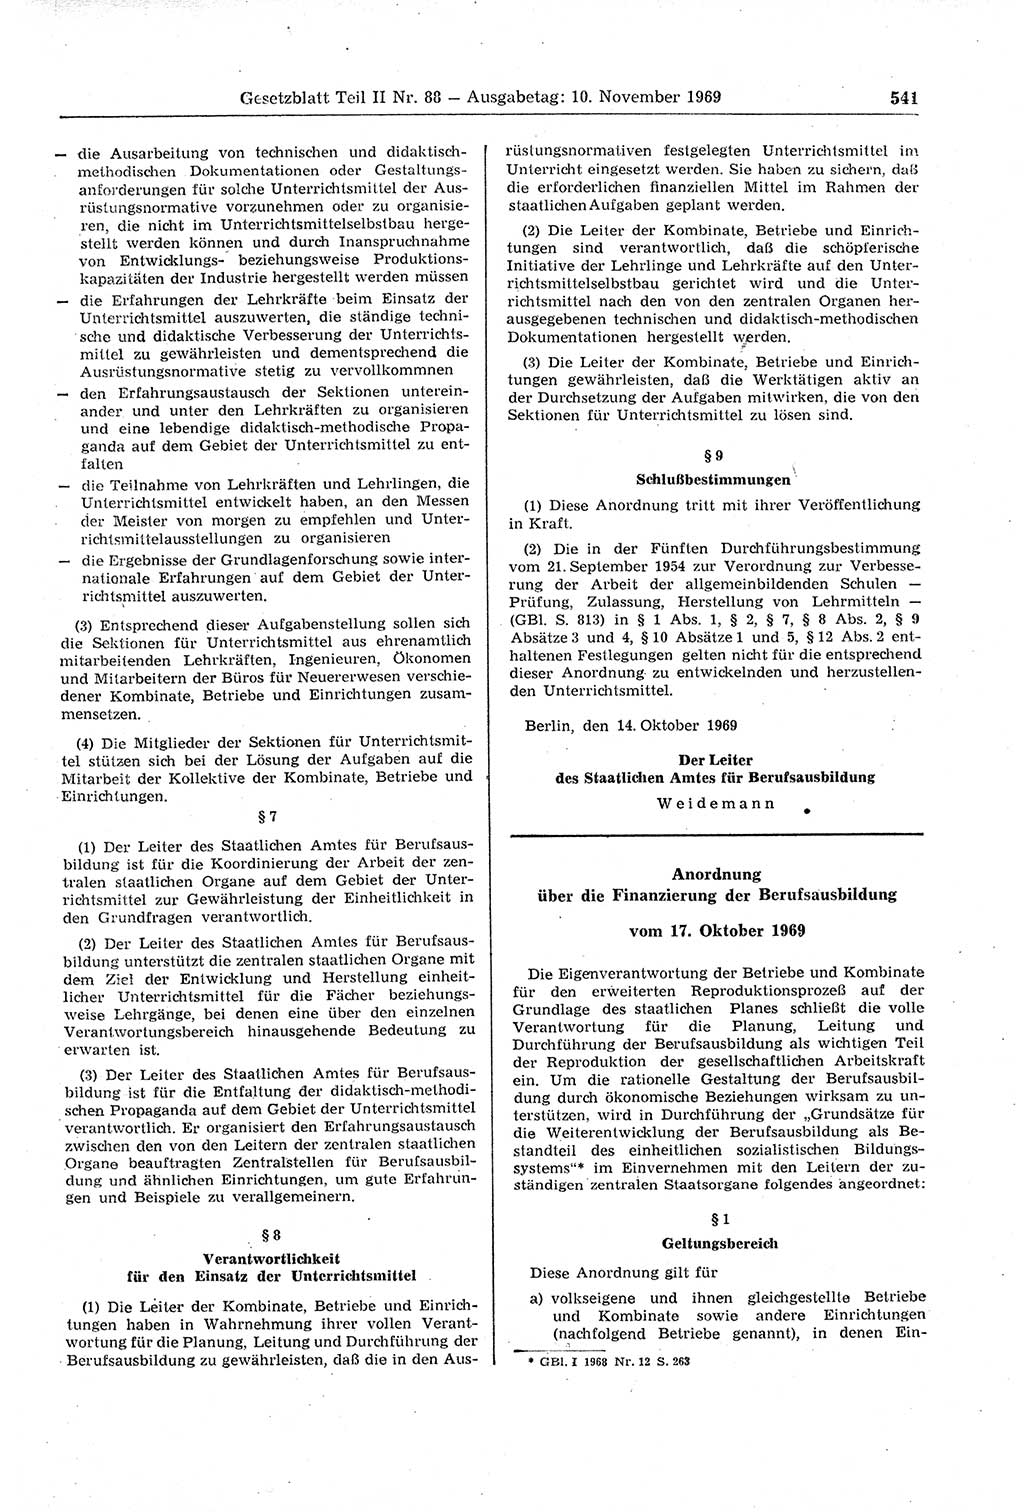 Gesetzblatt (GBl.) der Deutschen Demokratischen Republik (DDR) Teil ⅠⅠ 1969, Seite 541 (GBl. DDR ⅠⅠ 1969, S. 541)